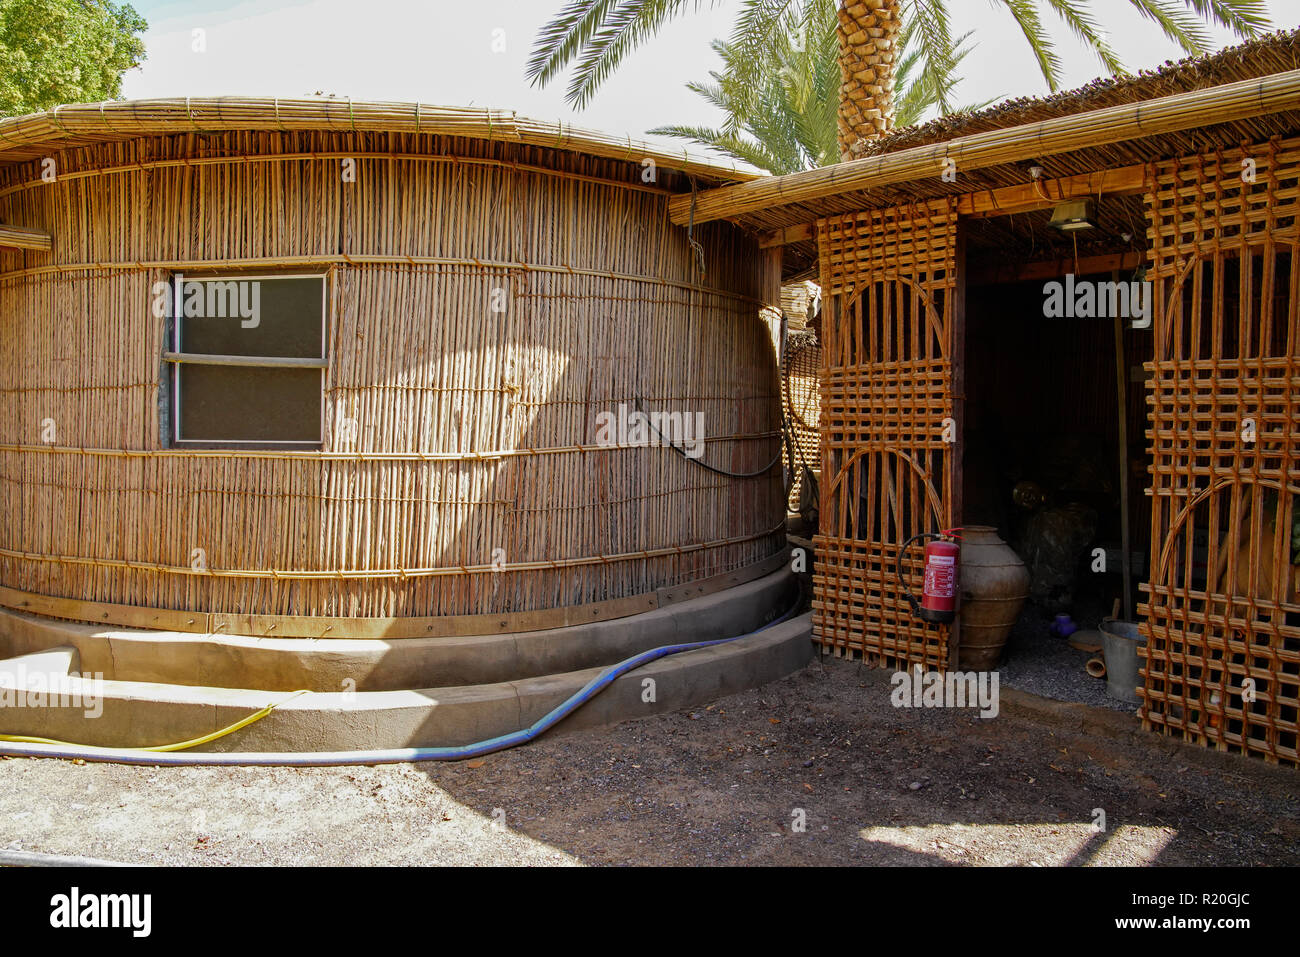 Traditionellen omanischen Dorf in Wadi Bani in der Nähe von Bahla. Oman. Fassade traditionellen arabischen home Build von Palm Tree Branches. Oman. Stockfoto